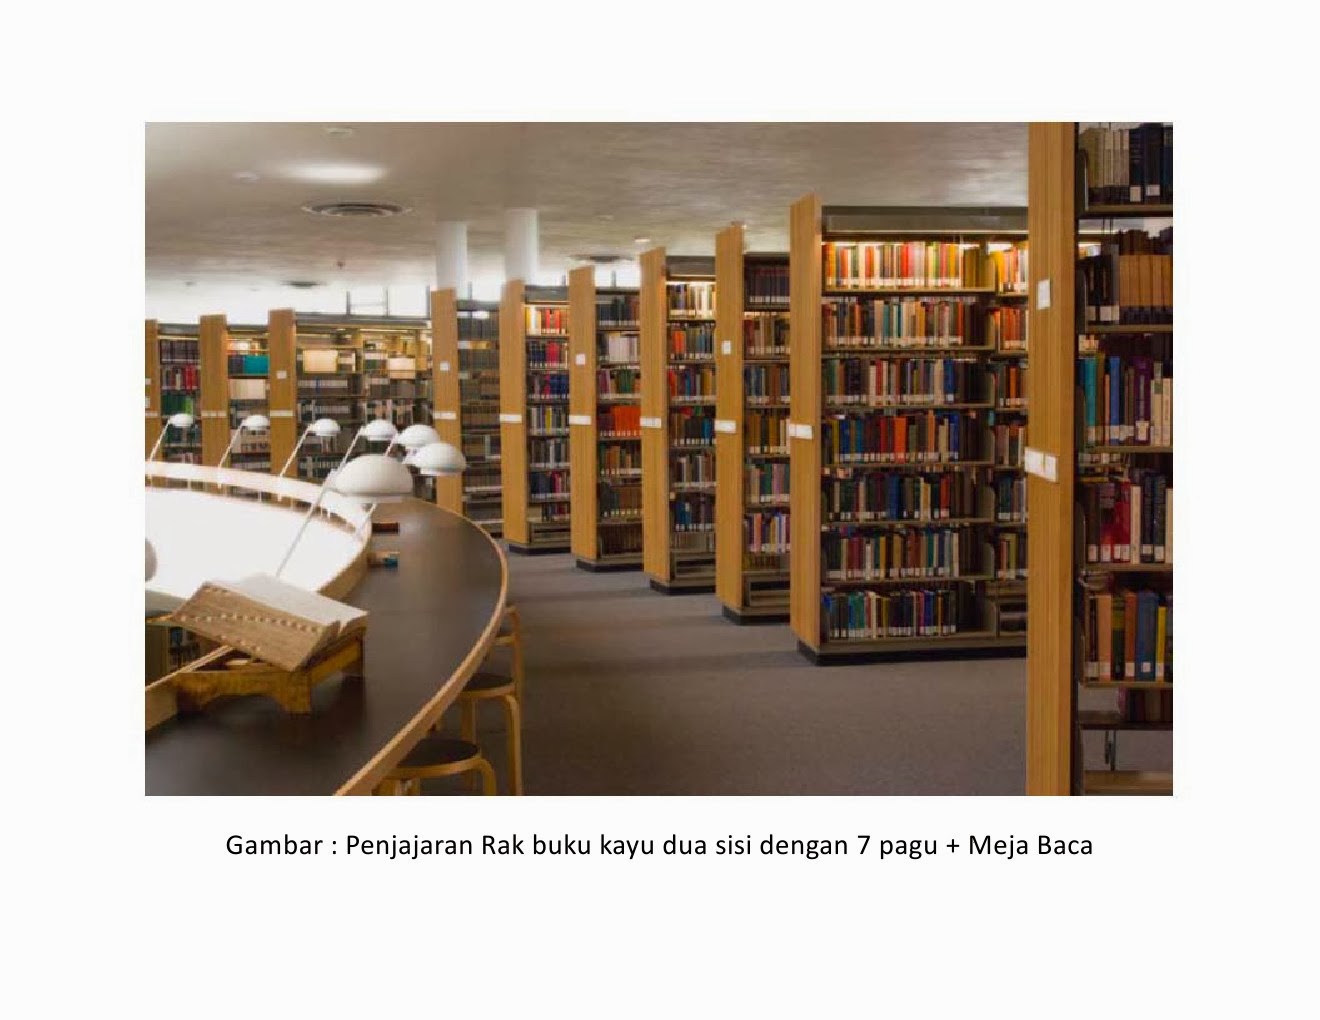 Rancangan Tata Ruang  Perpustakaan  Polikant Perpustakaan  